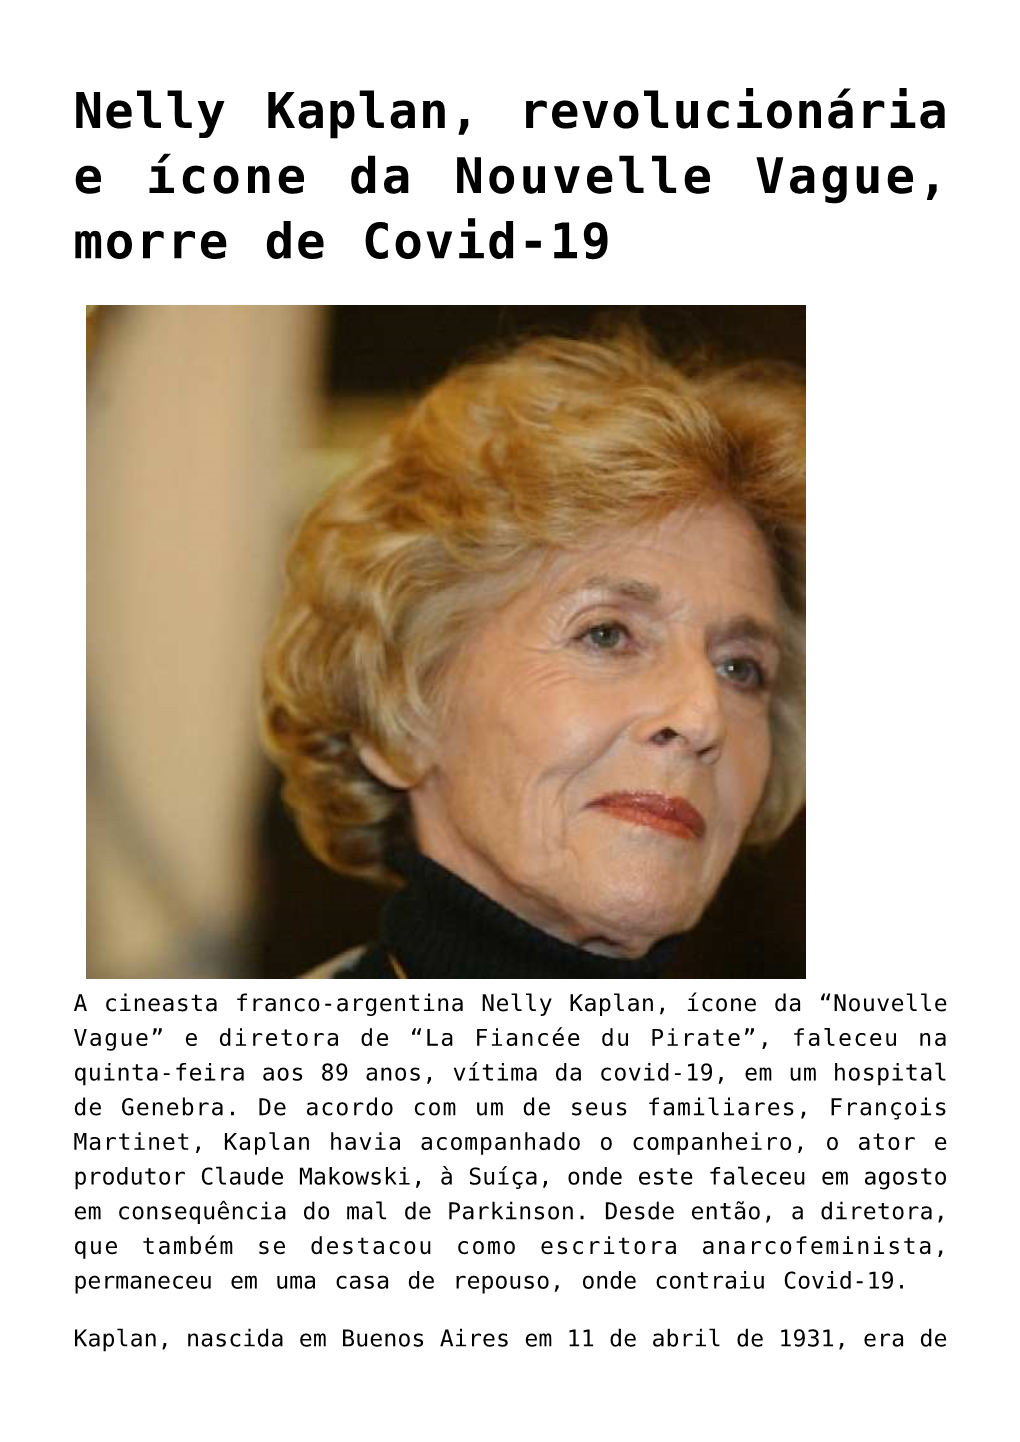 Nelly Kaplan, Revolucionária E Ícone Da Nouvelle Vague, Morre De Covid-19